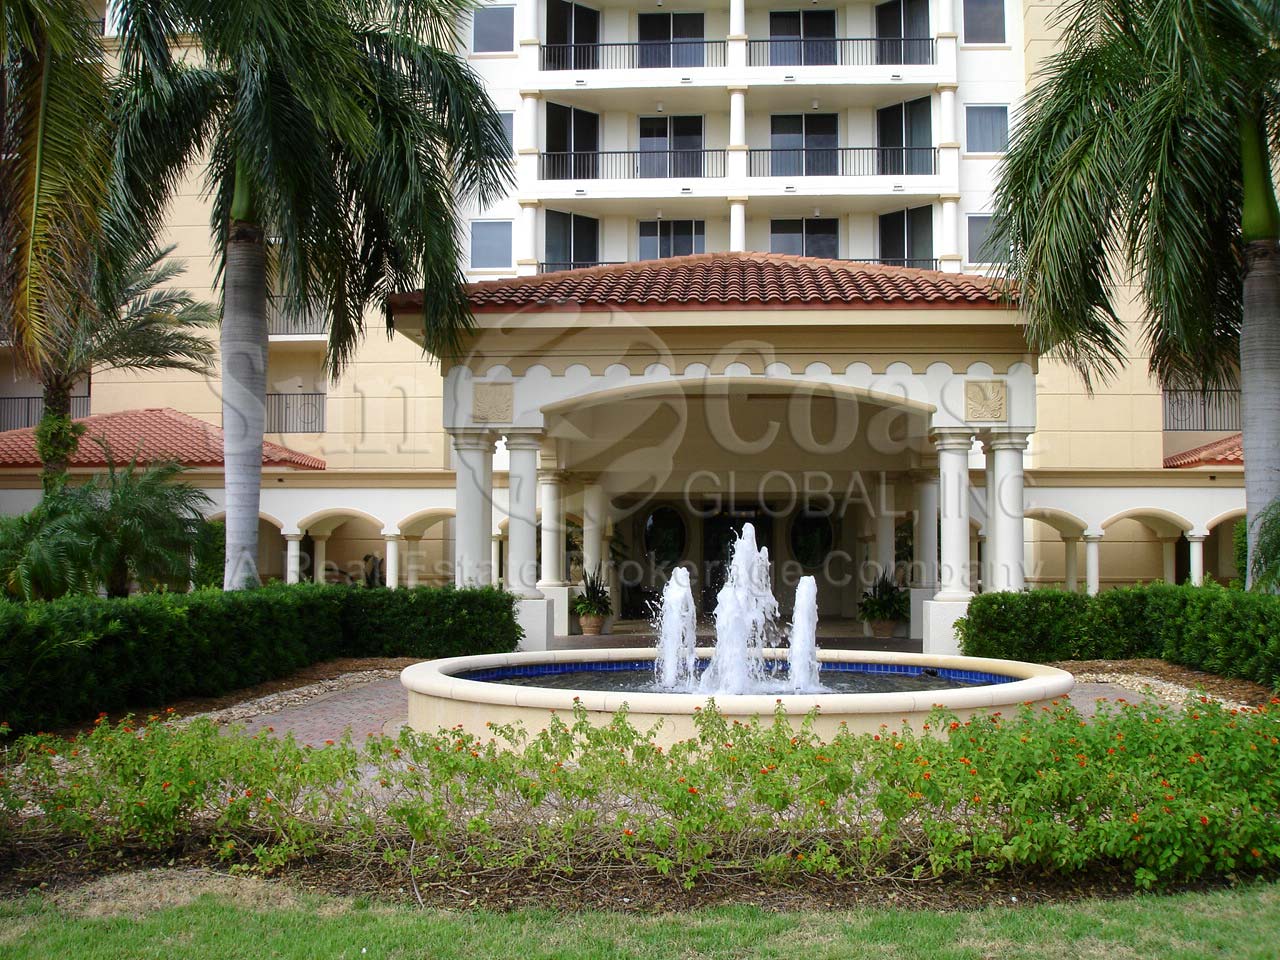 Serano Fountain in front of the Condominium Building  